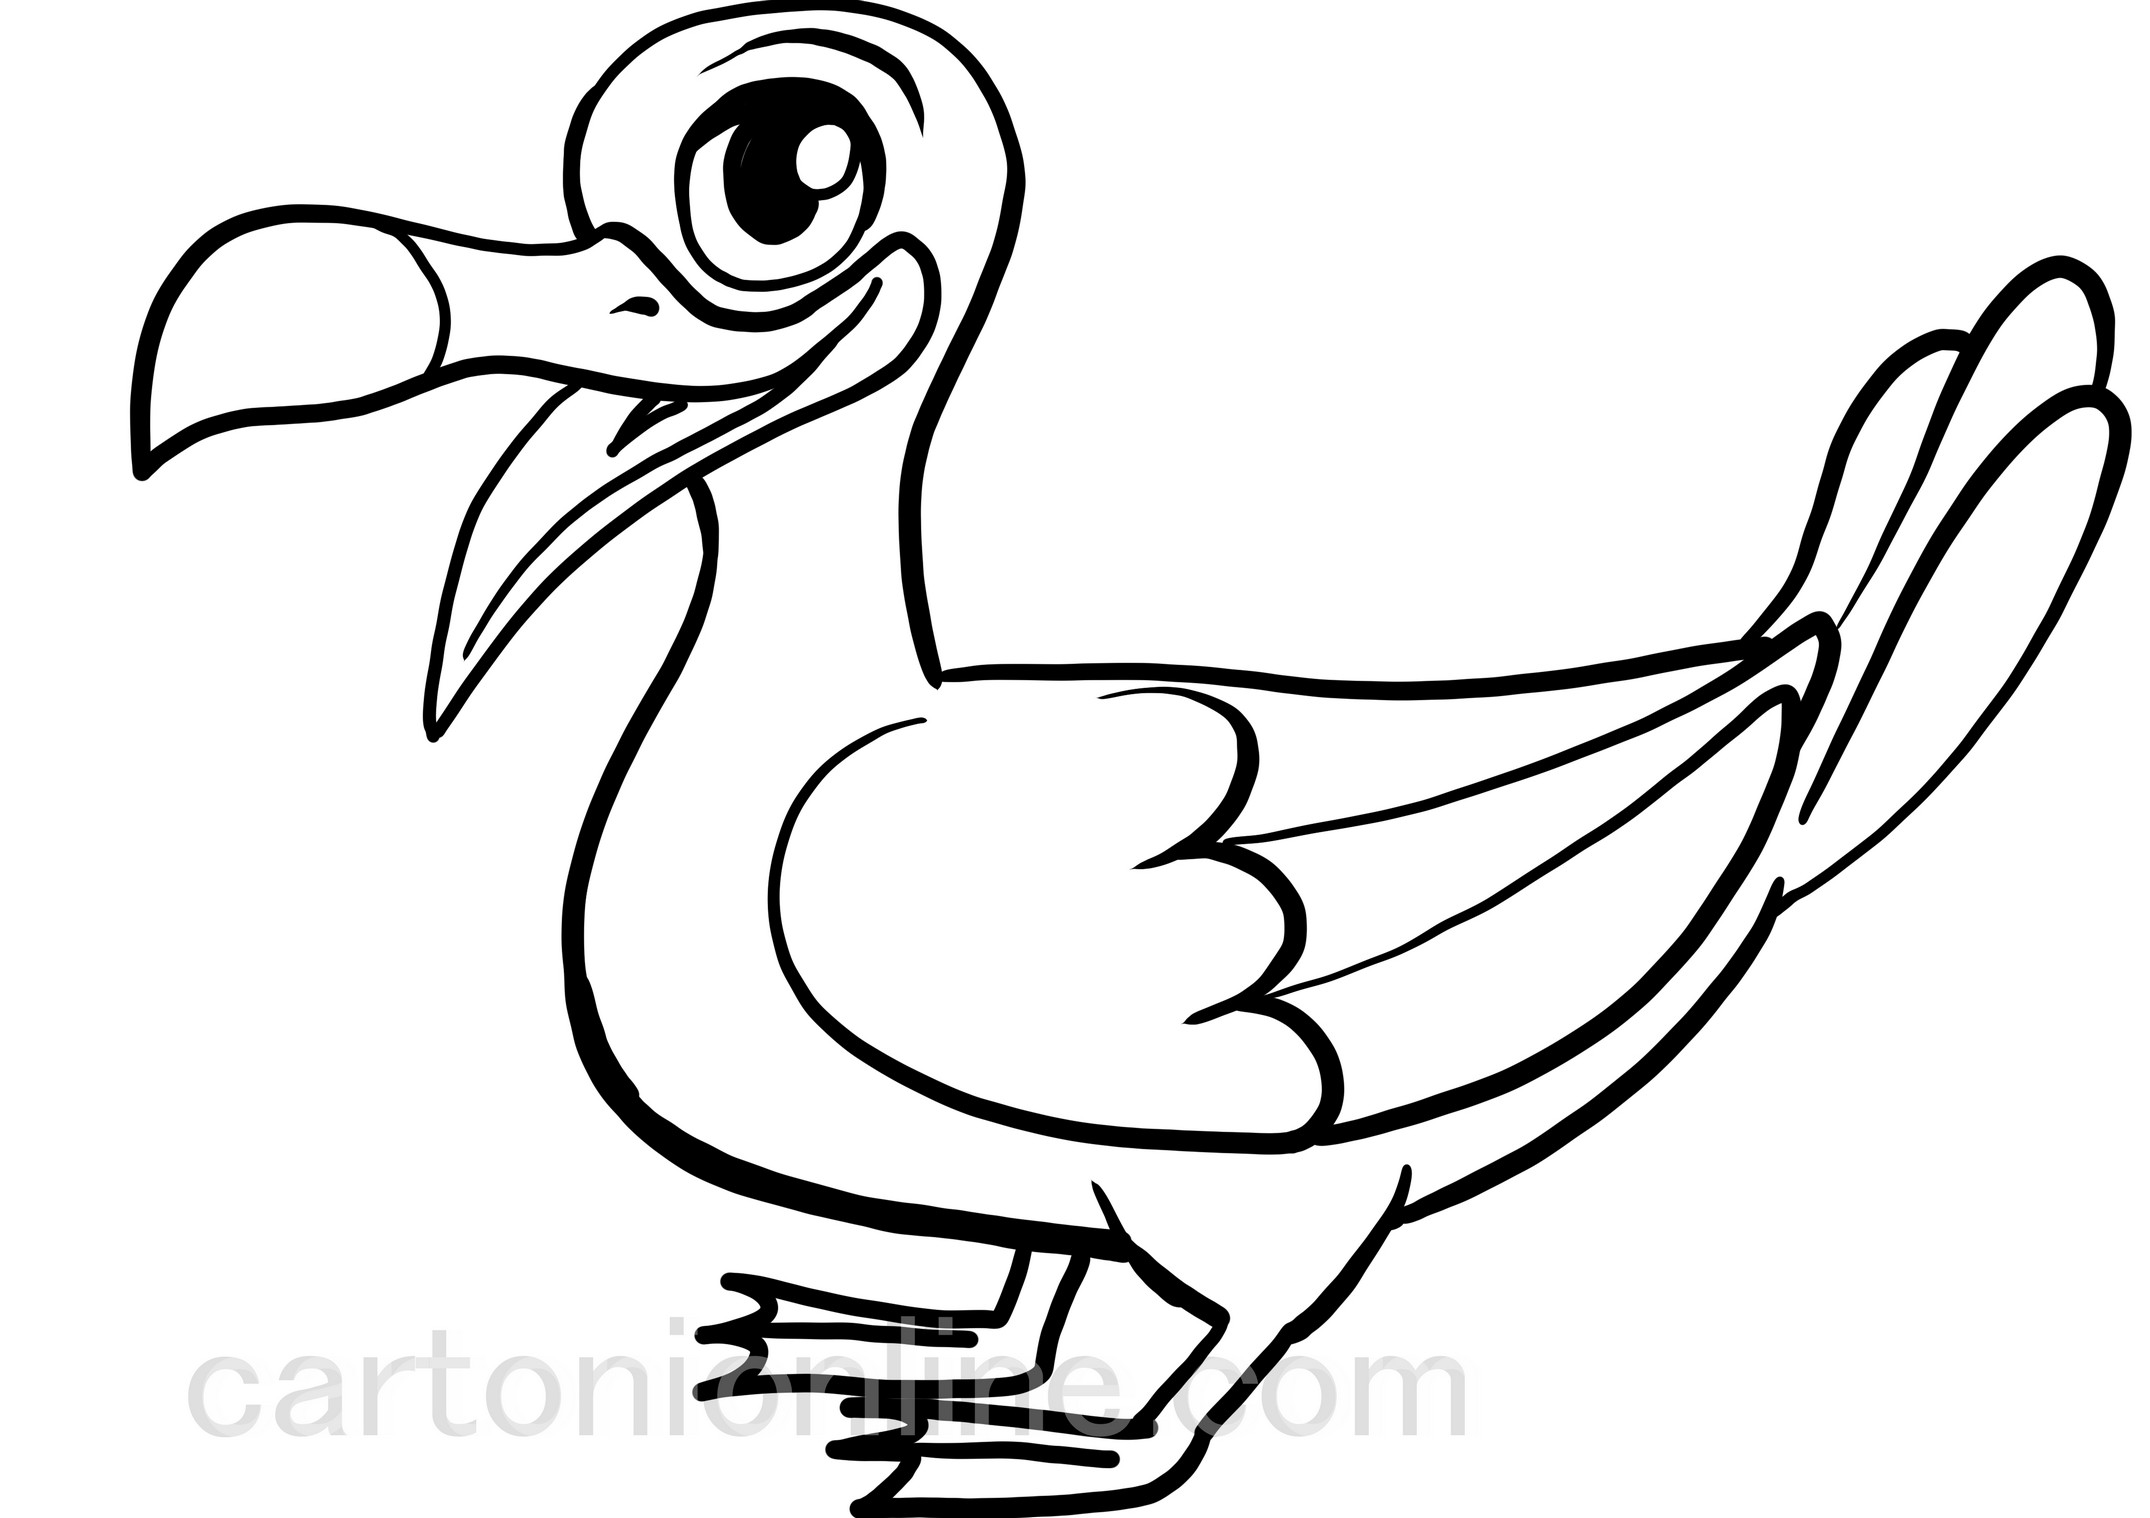 Albatross cartoon coloring page